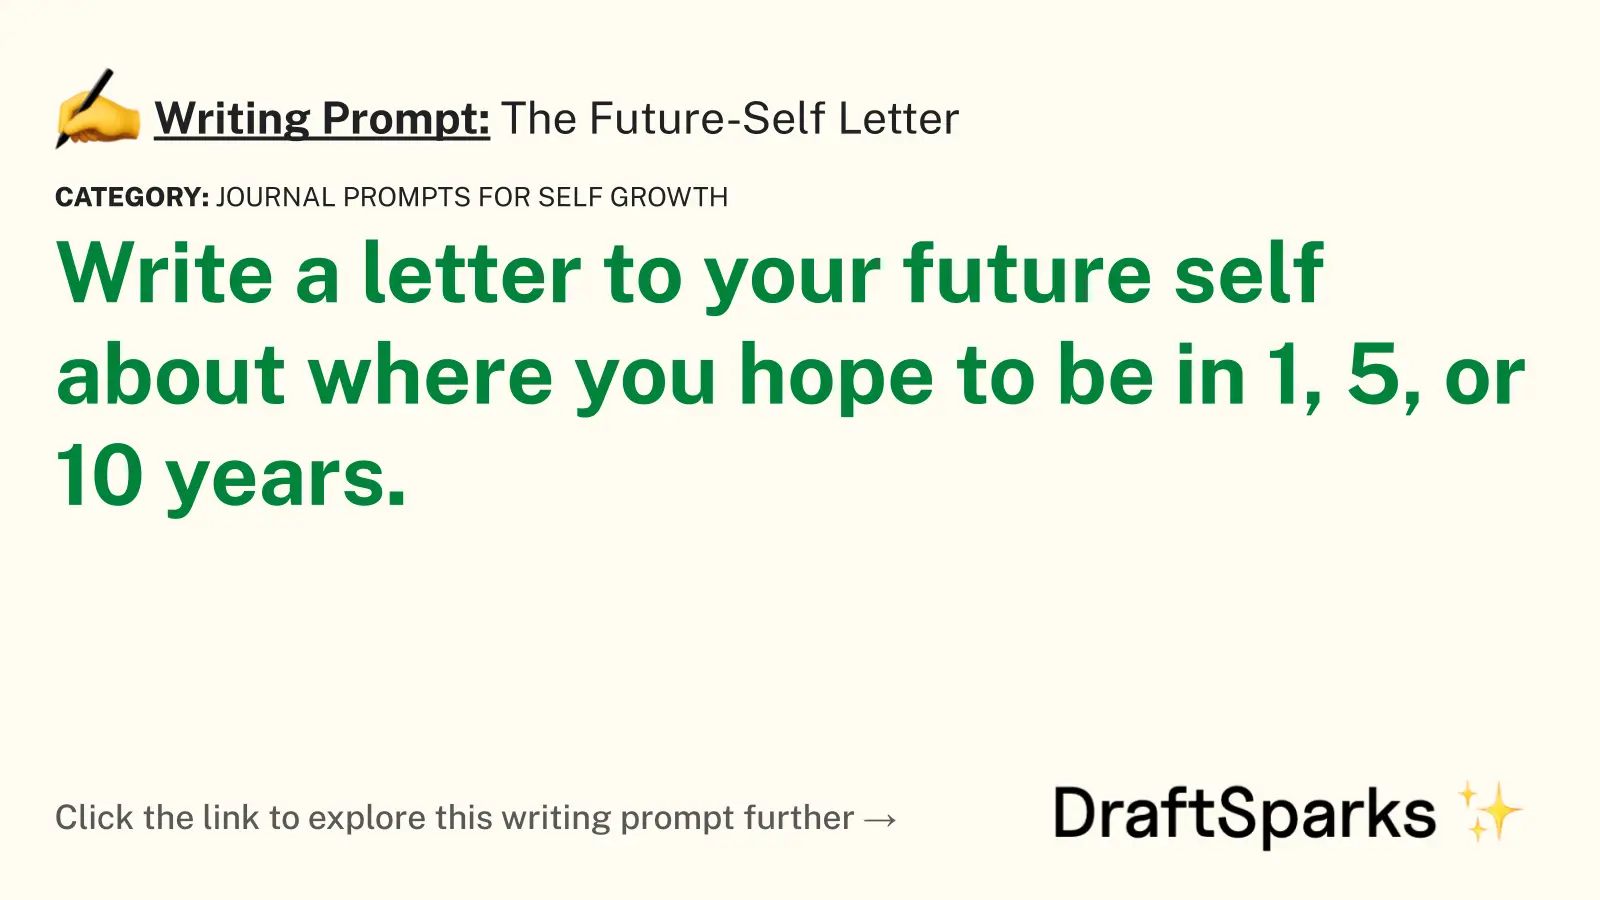 The Future-Self Letter